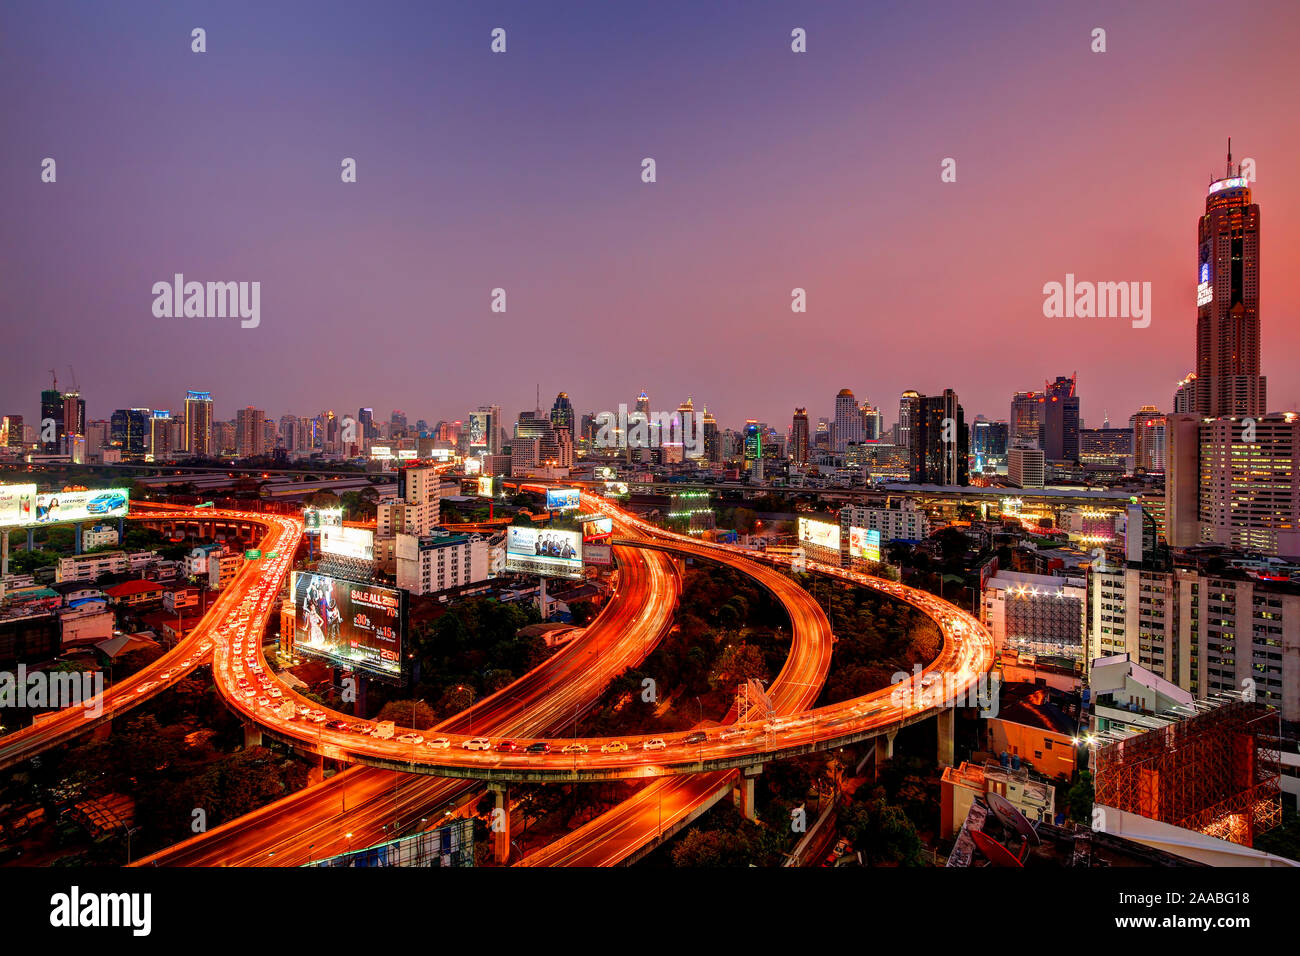 Famous Bangkok Expressway Interchange & City Skyline Stock Photo